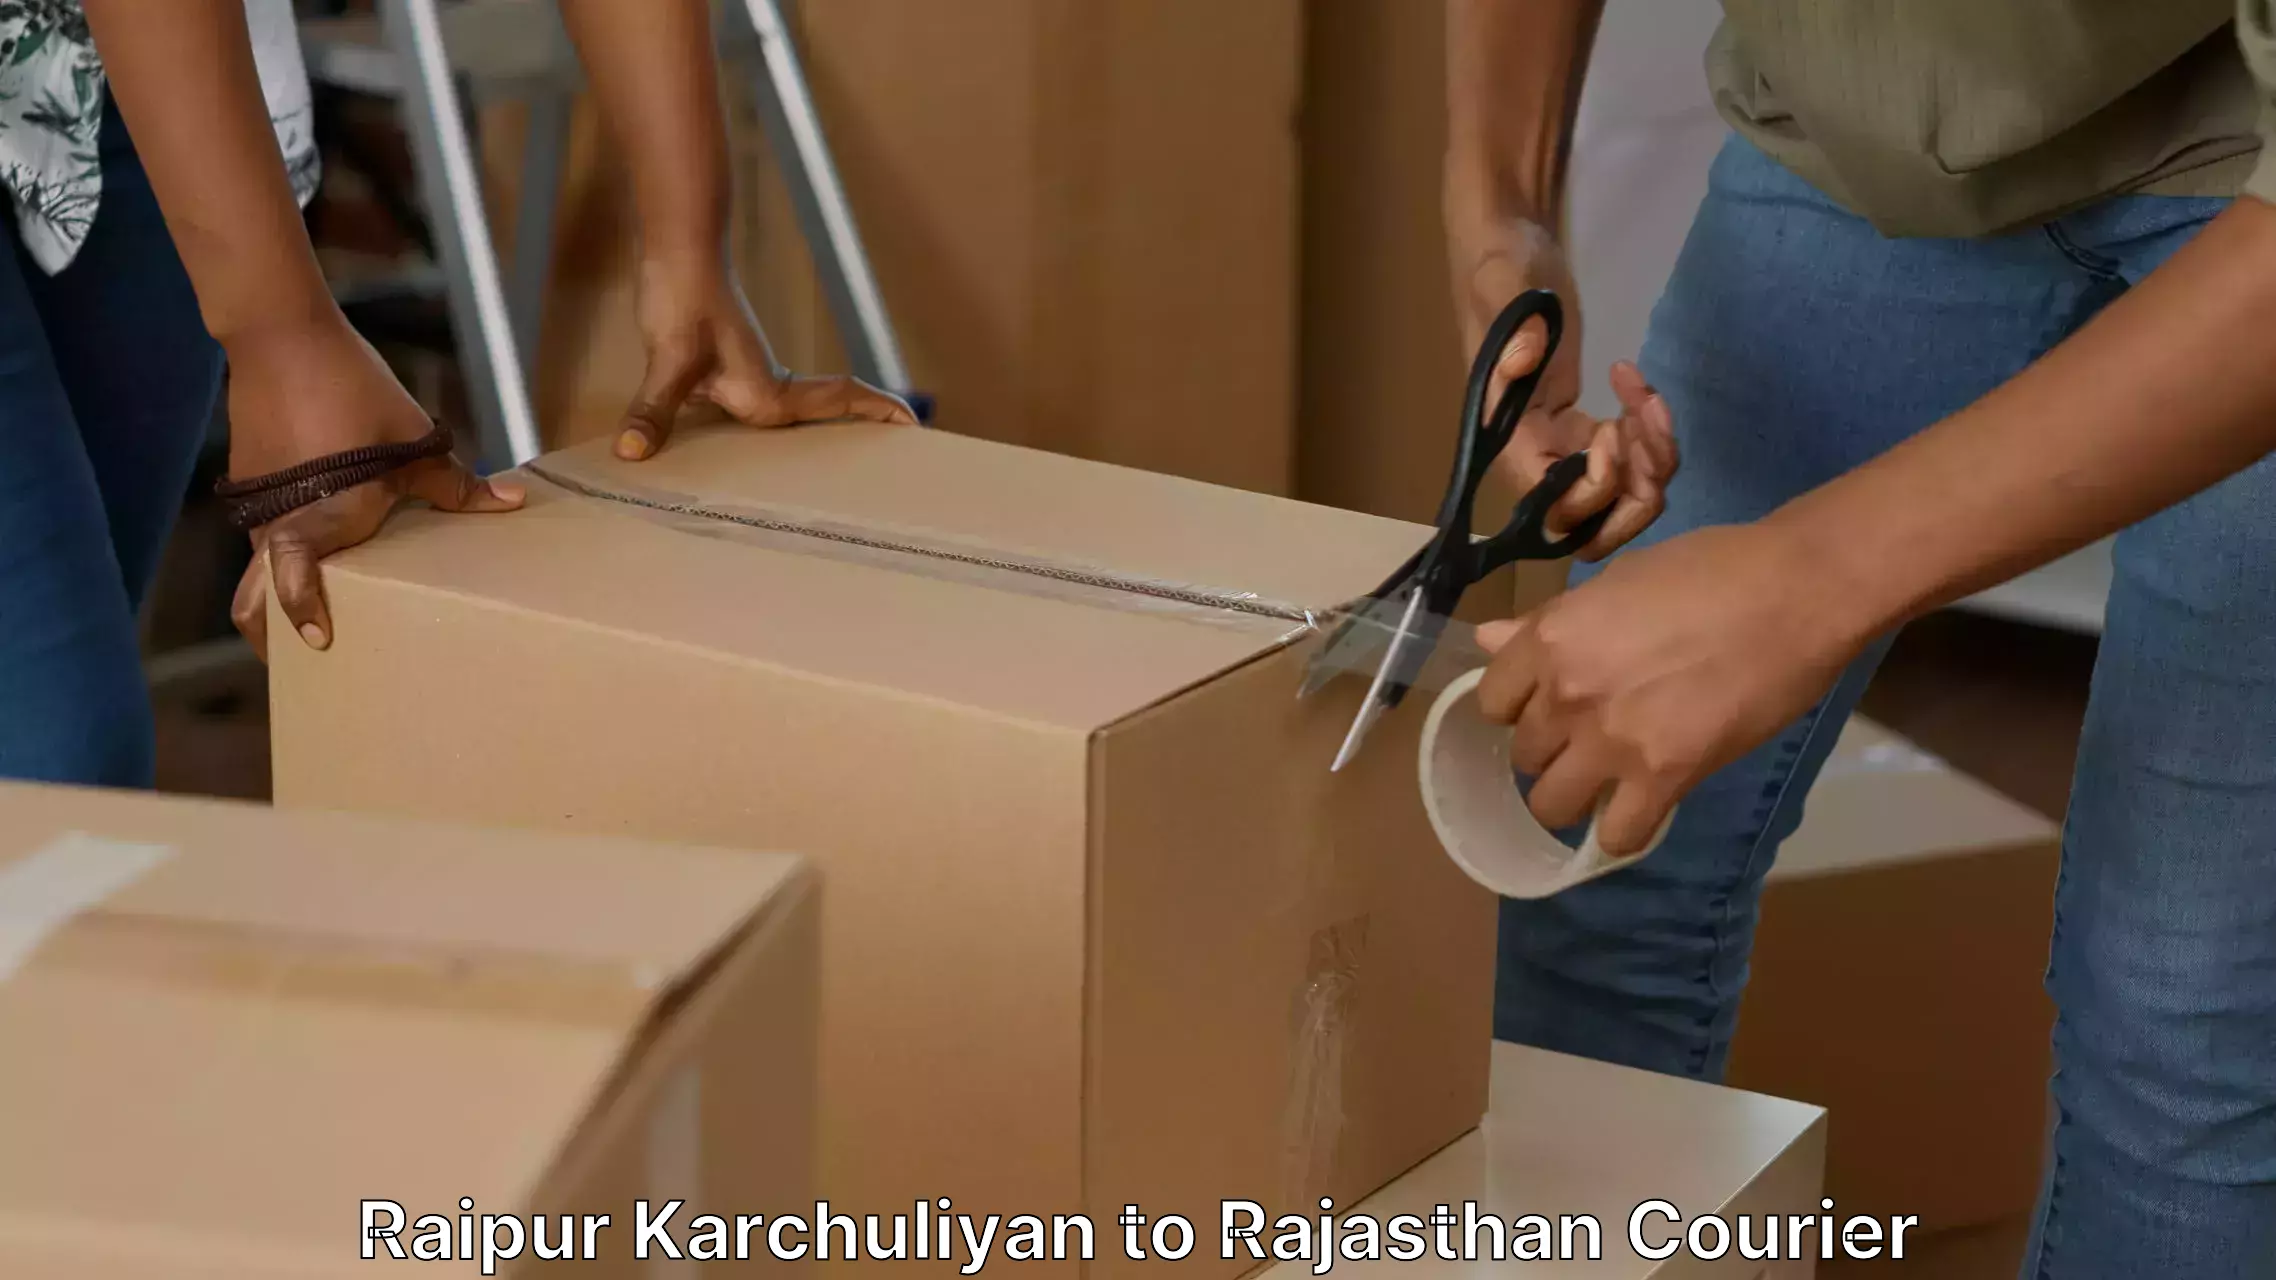 Furniture moving experts Raipur Karchuliyan to Bilara